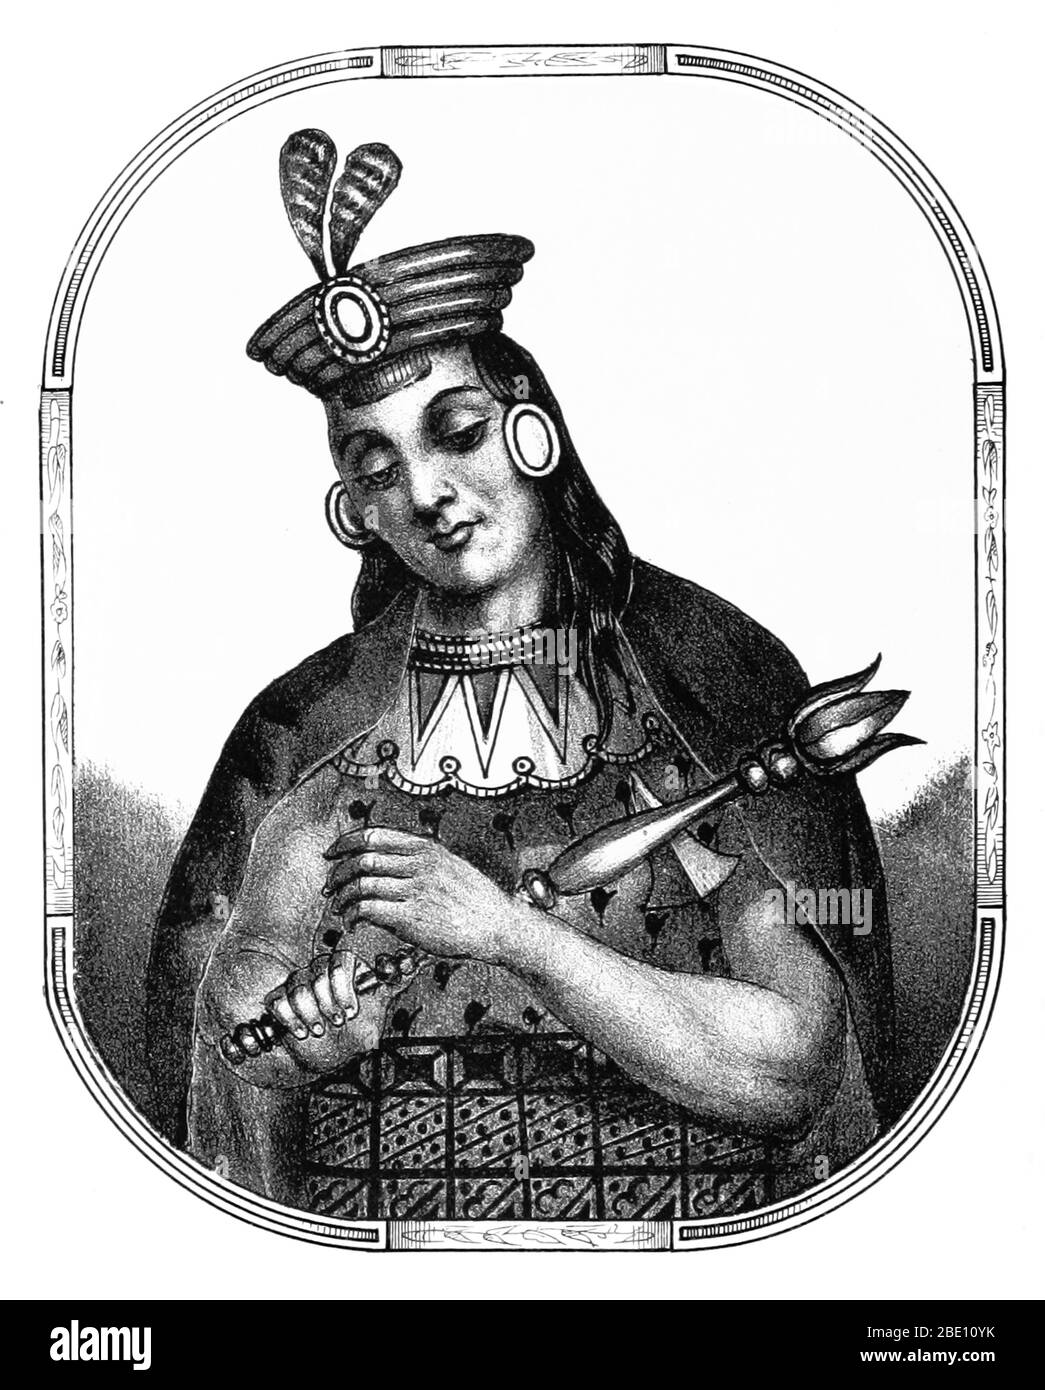 Yawar Waqaq fue el séptimo Sapa Inca del Reino de Cuzco (comenzando alrededor de 1380) y el segundo de la dinastía Hanan. Su nombre se refiere a una historia que fue secuestrado de niño por la Ccapac Ayarmaca Sinchi Tocay, llorando lágrimas de sangre sobre su predicamento. Finalmente escapó con la ayuda de una de las amantes de su captor, Chimpu Orma. Asumiendo el reinado a la edad de 19 años, Yawar conquistó Pillauya, Choyca, Yuco, Chilincay, Taocamarca y Cavinas. Imagen tomada de la página 72 de 'Recuerdos de la Monarquía Peruana, ó bosquejo de la historia de los Incas, etc' por justo Sahuaraura, 1850. Foto de stock